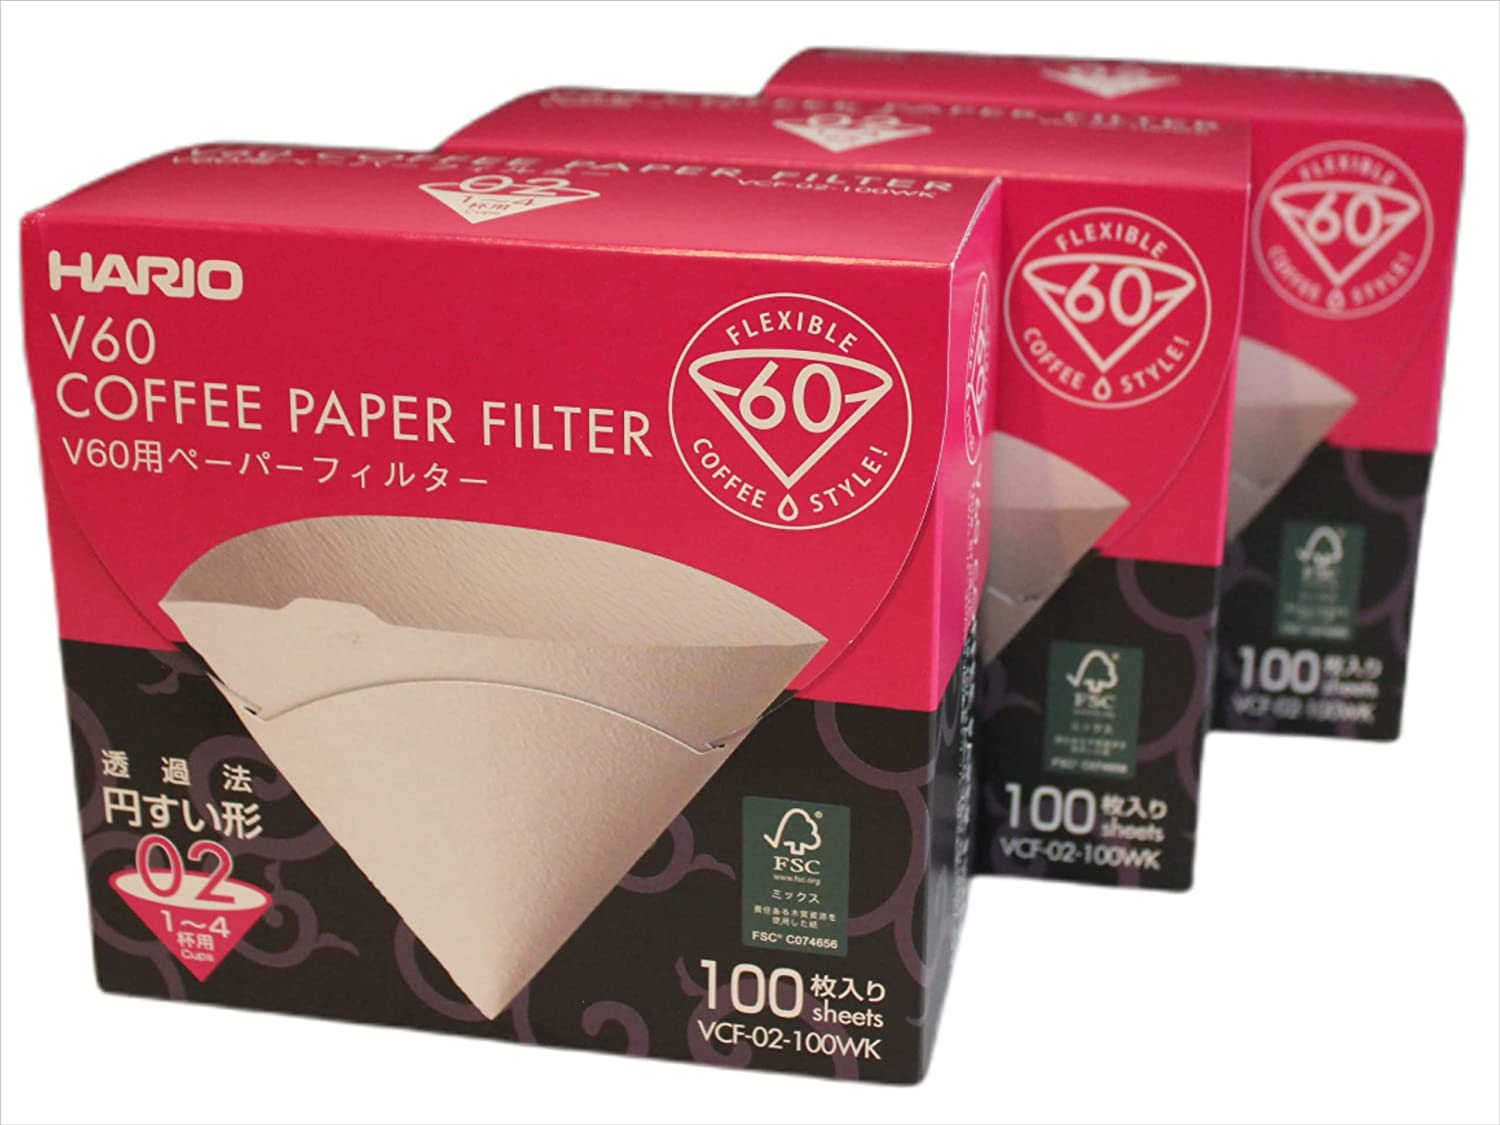 HARIO 3 coffee filters 02 / 3 x VCF-02-100WK / 3 x 100 pieces (300 pieces)